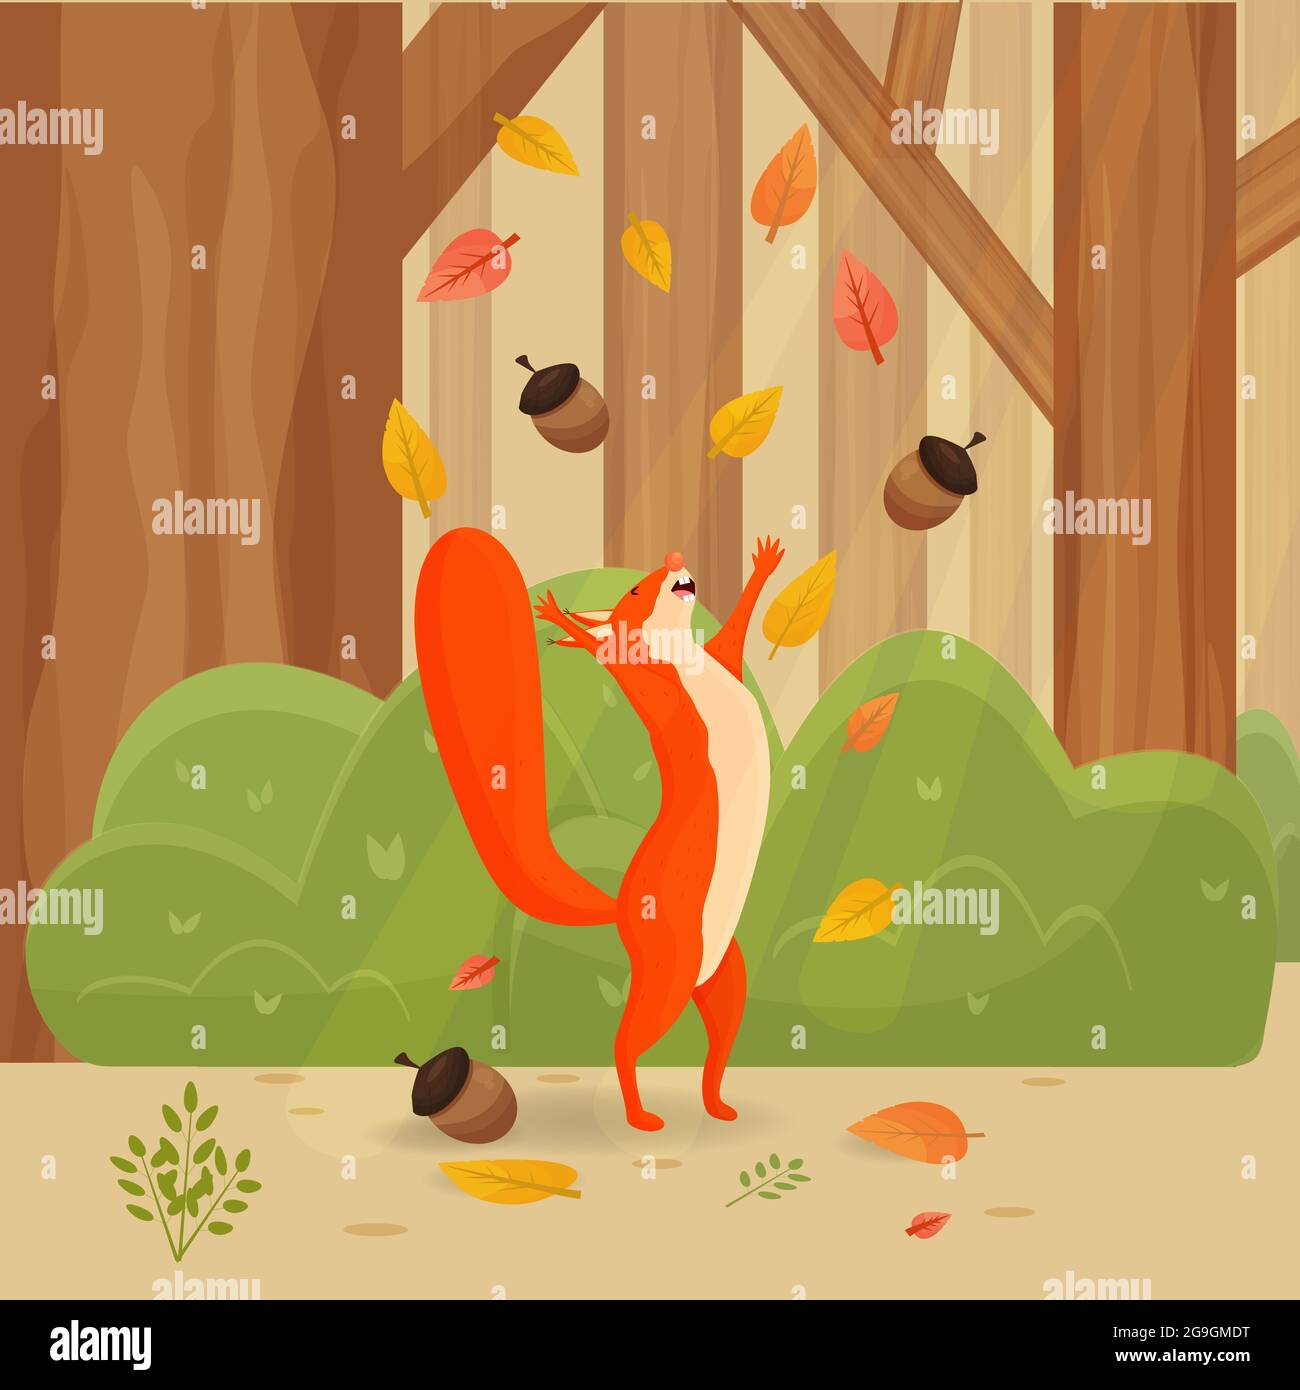 Joyeux dessin animé, écureuil comique avec feuilles d'automne dans les paysages de forêt, paysage, arrière-plan coloré et illustration de vecteur de stock lumineux. Illustration vectorielle Illustration de Vecteur